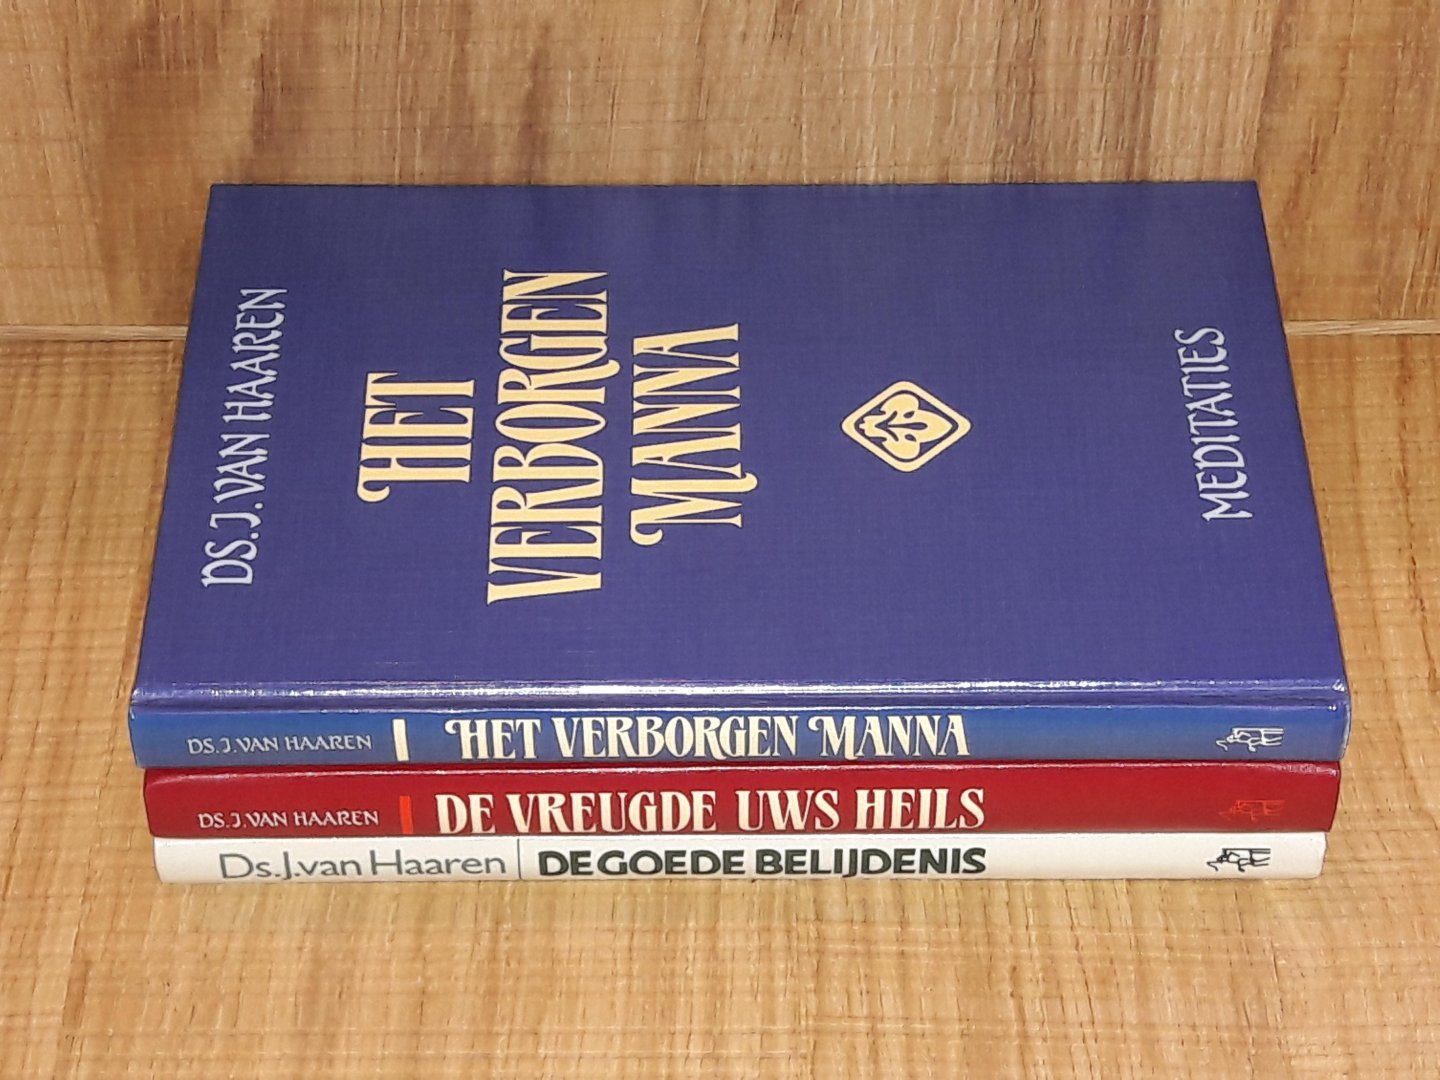 Haaren, ds. J. van - SET 3 boeken: Het verborgen manna + De vreugde Uws heils + De goede belijdenis